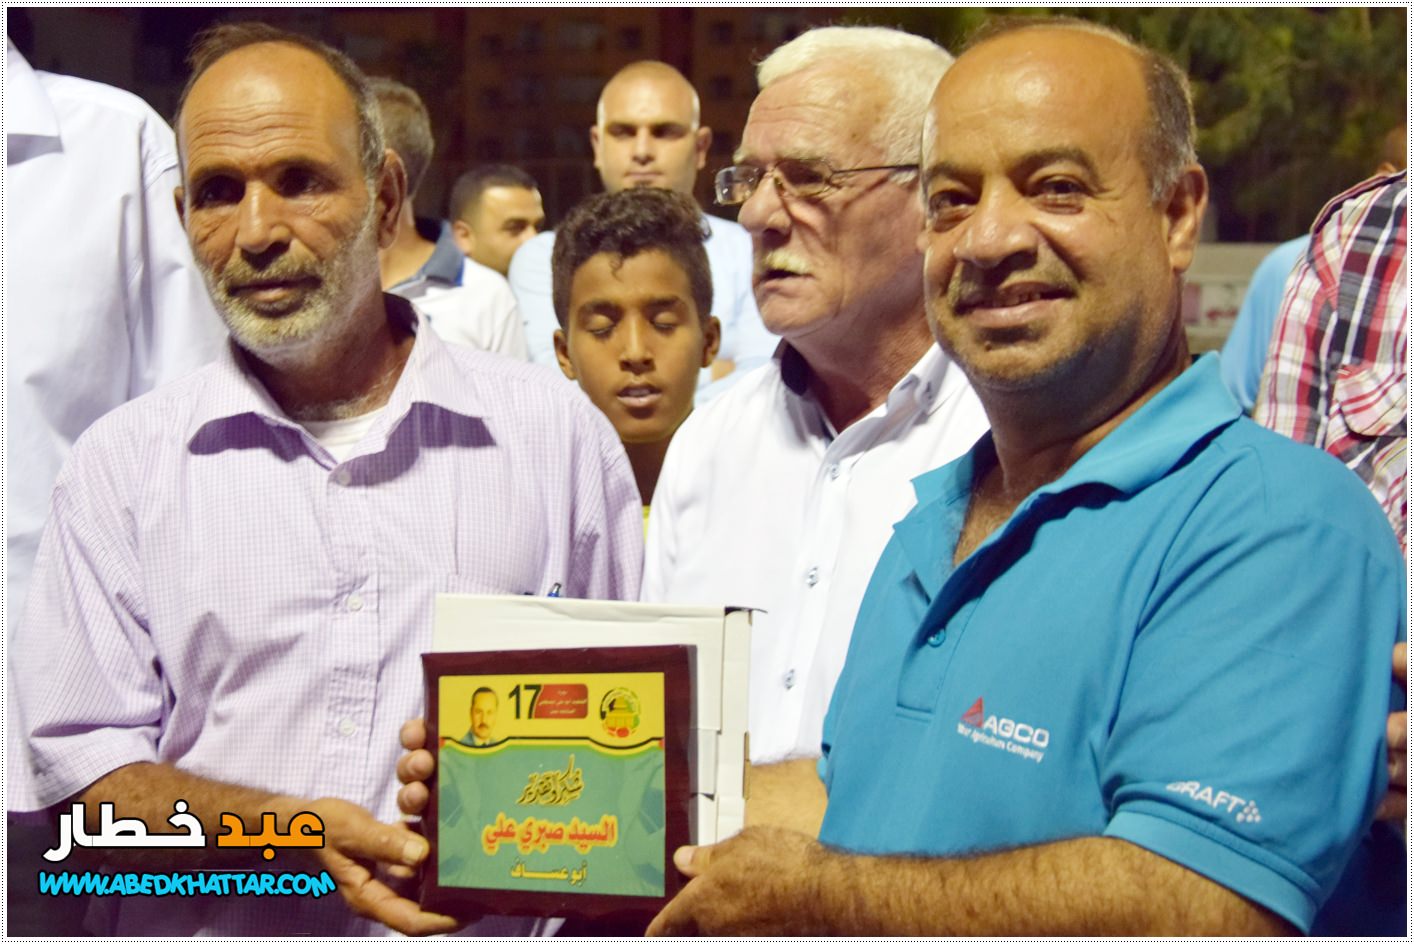  منظمة الشبيبة الفلسطينية ونادي القدس يختتمان دورة الشهيد أبو علي مصطفى الرياضية في مخيم البداوي